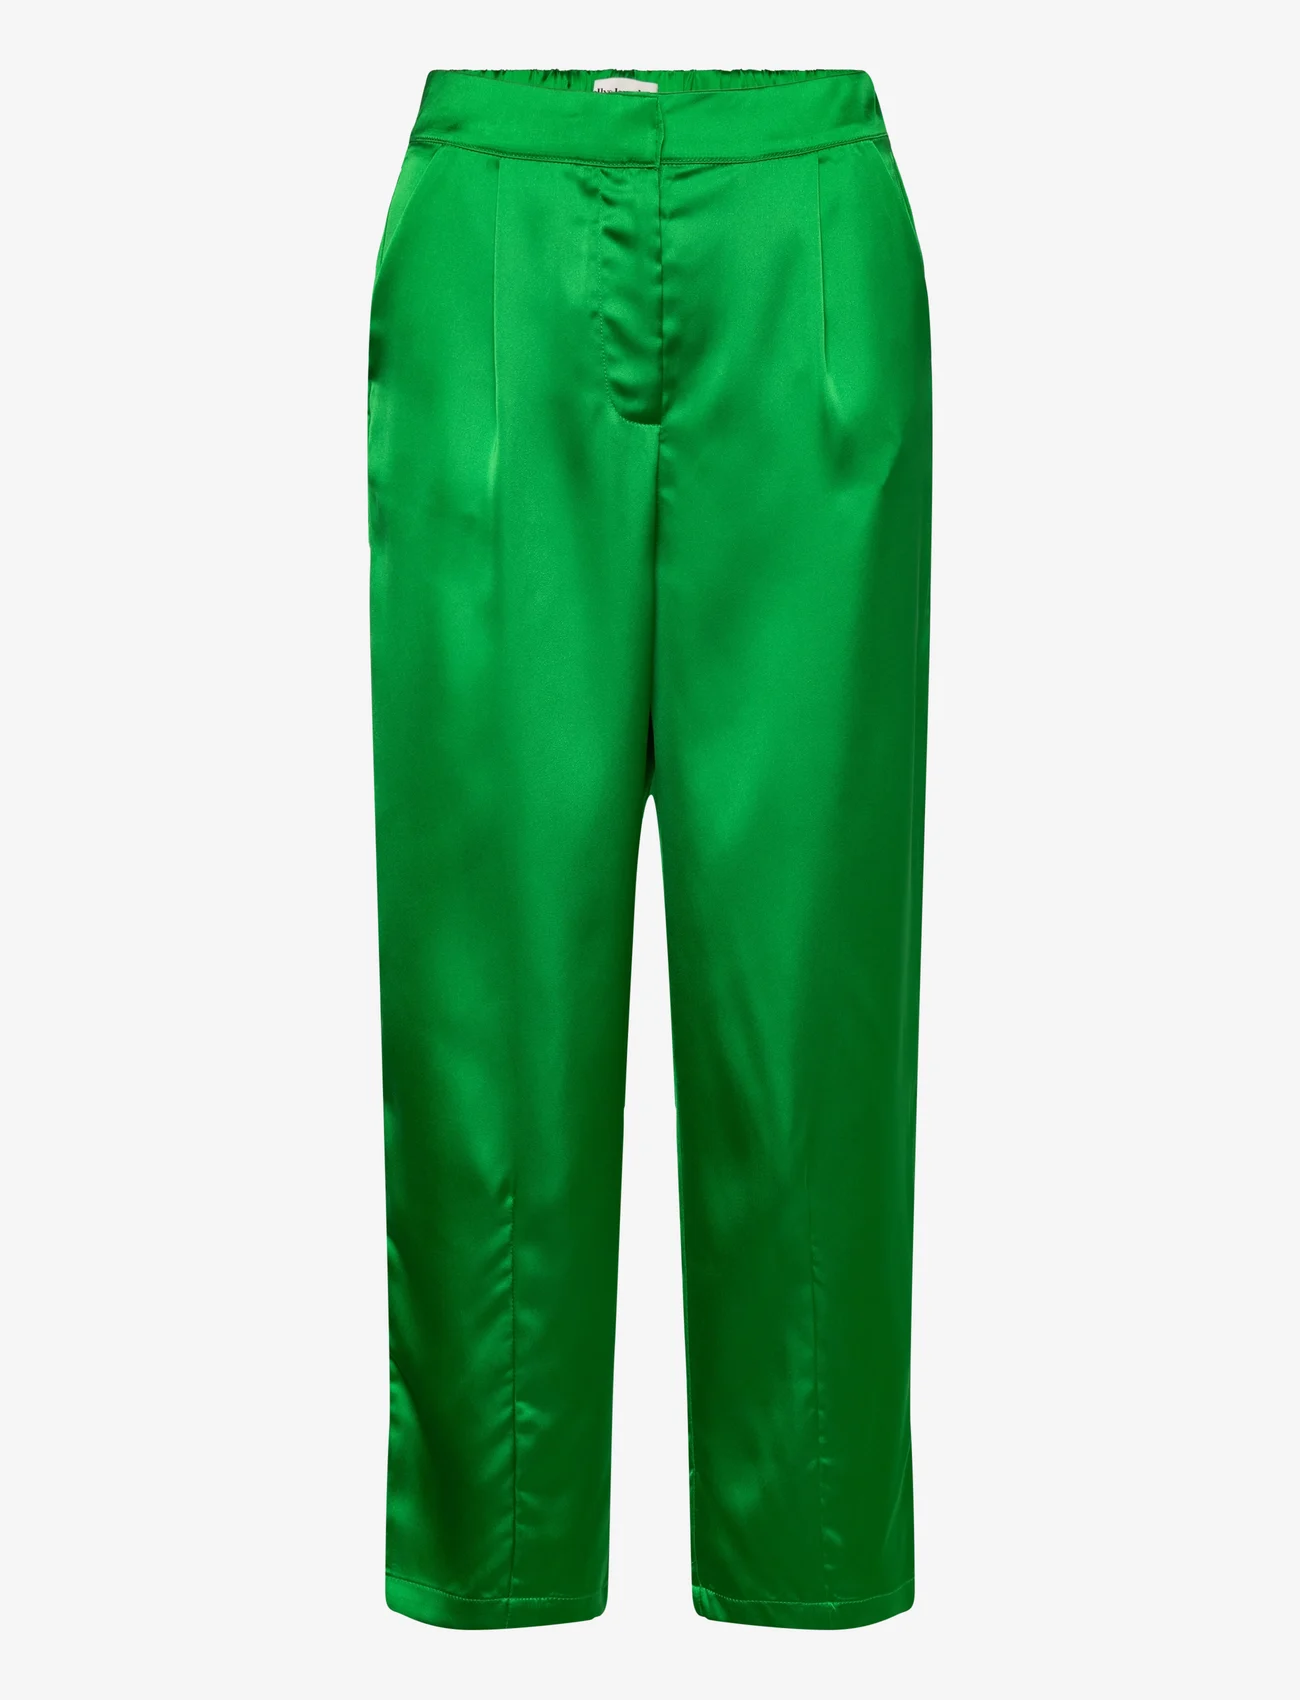 Lollys Laundry - Maisie Pants - tiesaus kirpimo kelnės - green - 0